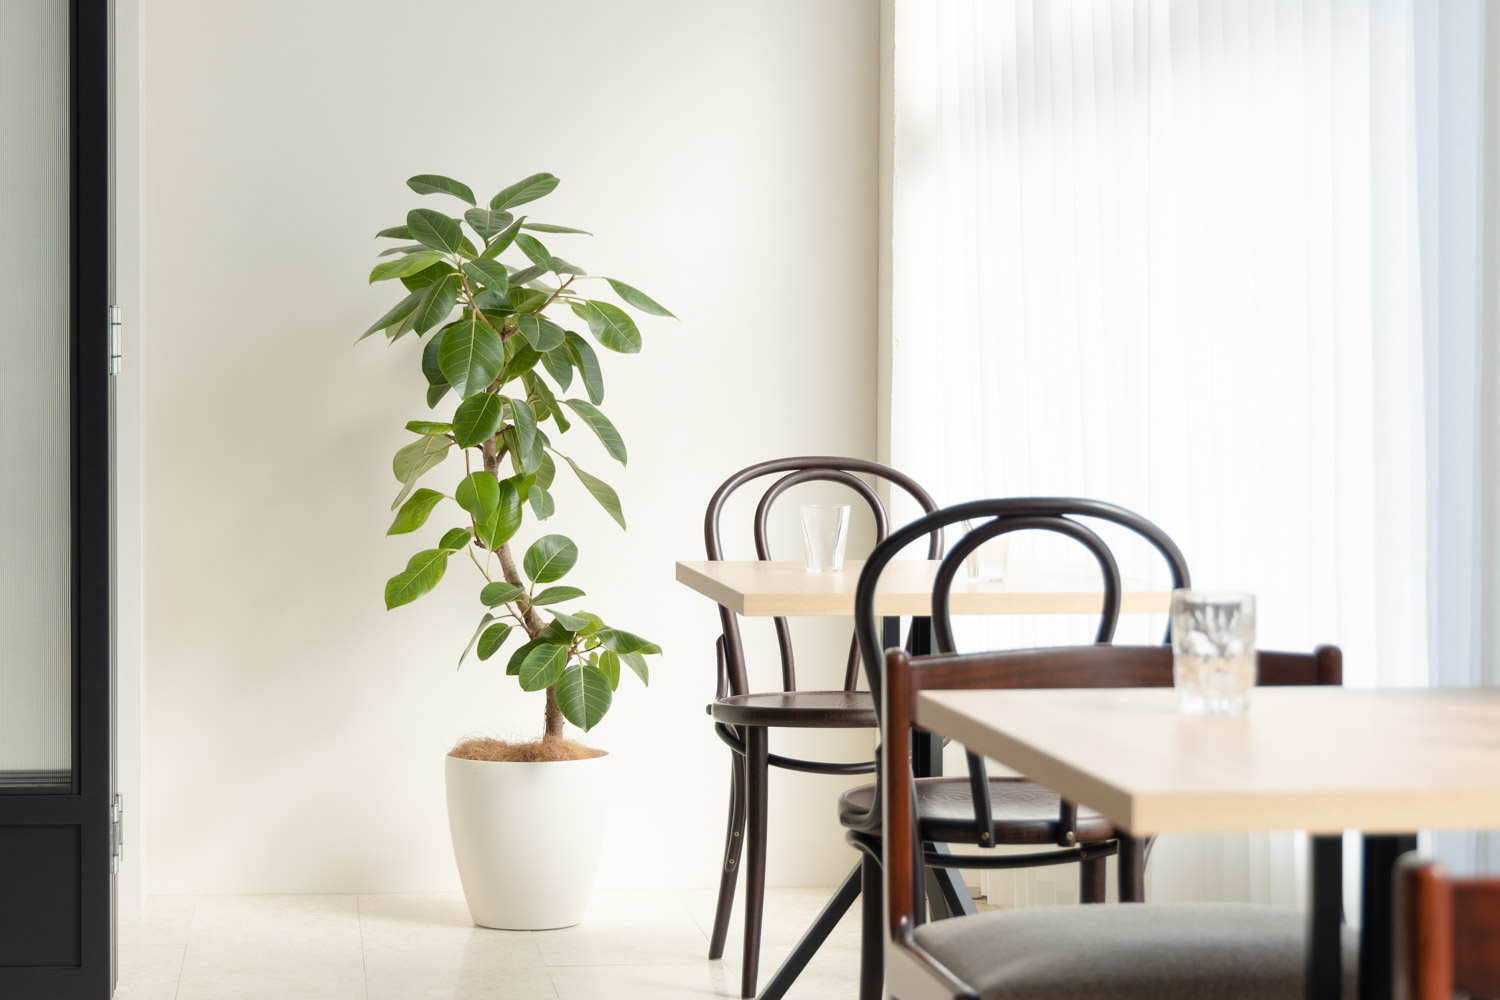 自然光が入る明るい部屋にテーブルセットと観葉植物が設置されている写真